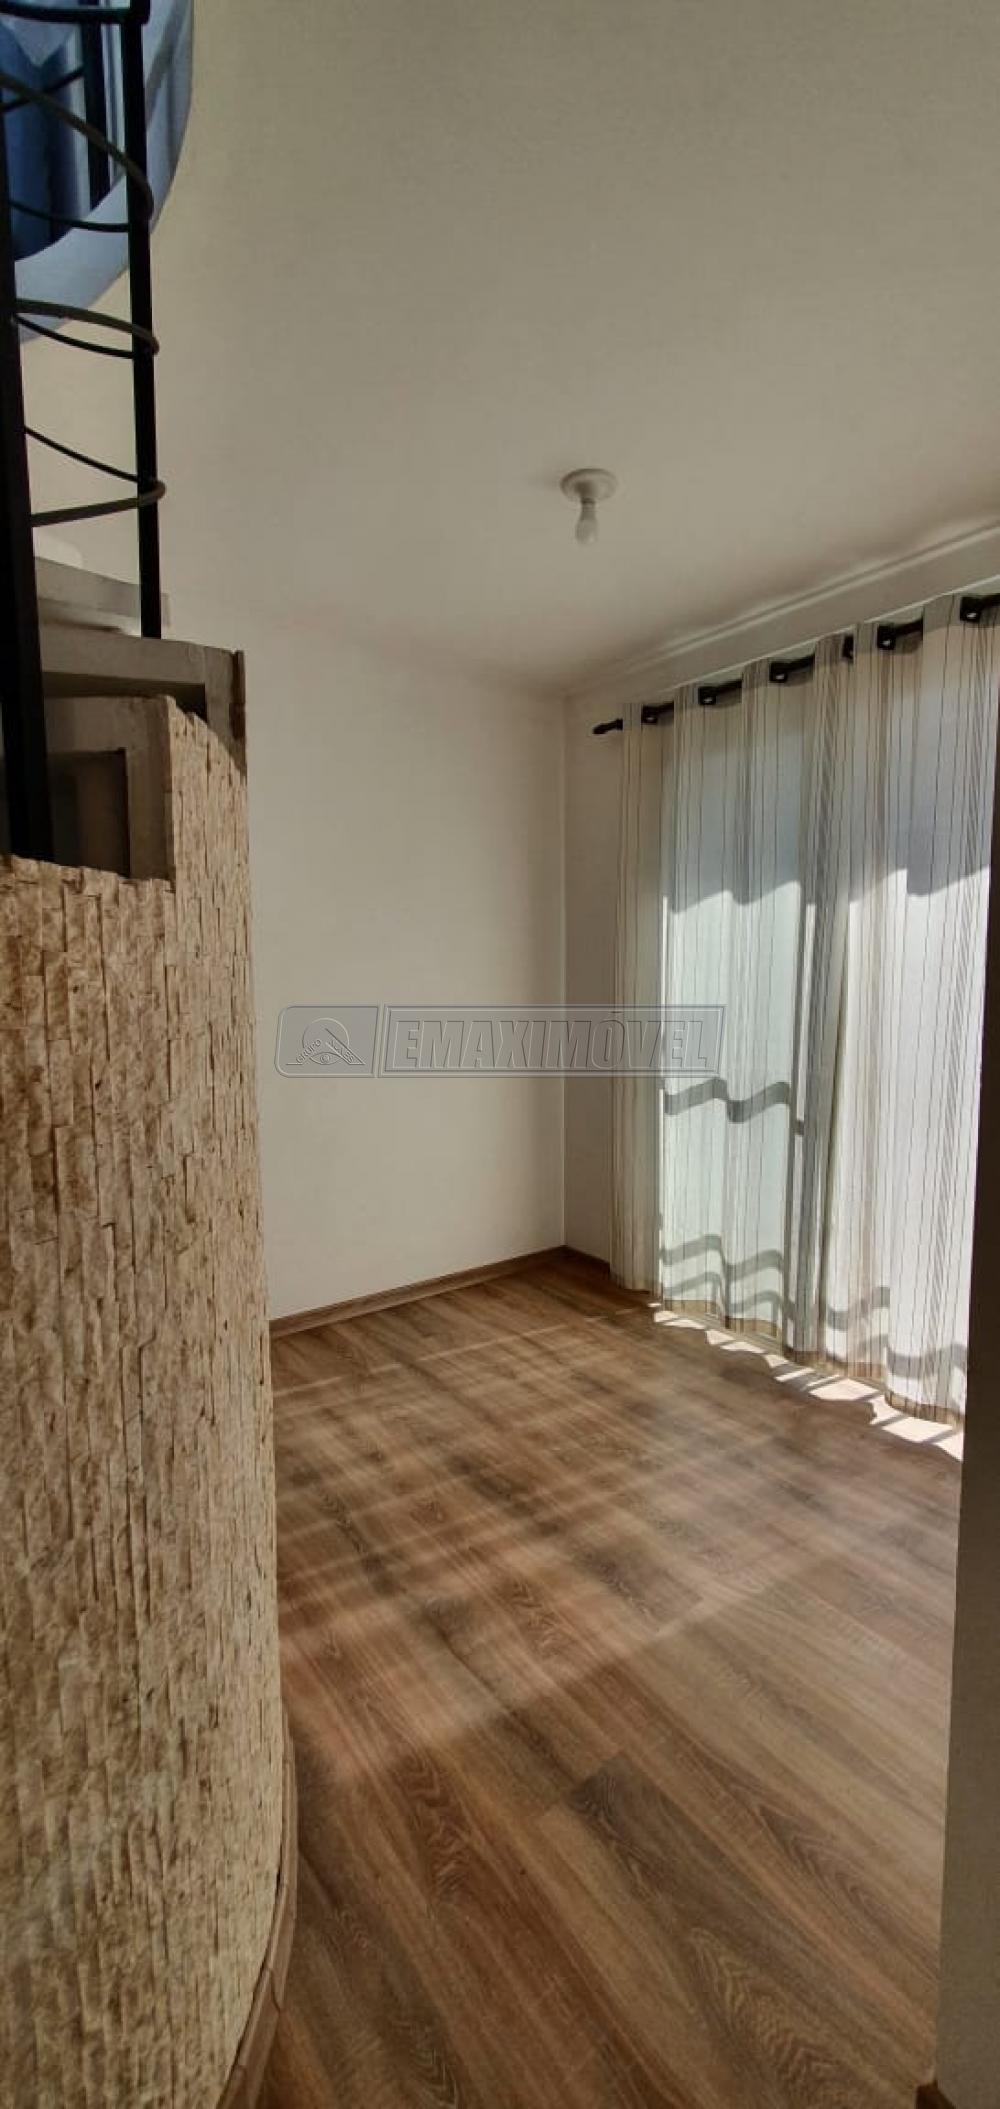 Comprar Apartamento / Duplex em Sorocaba R$ 210.000,00 - Foto 4